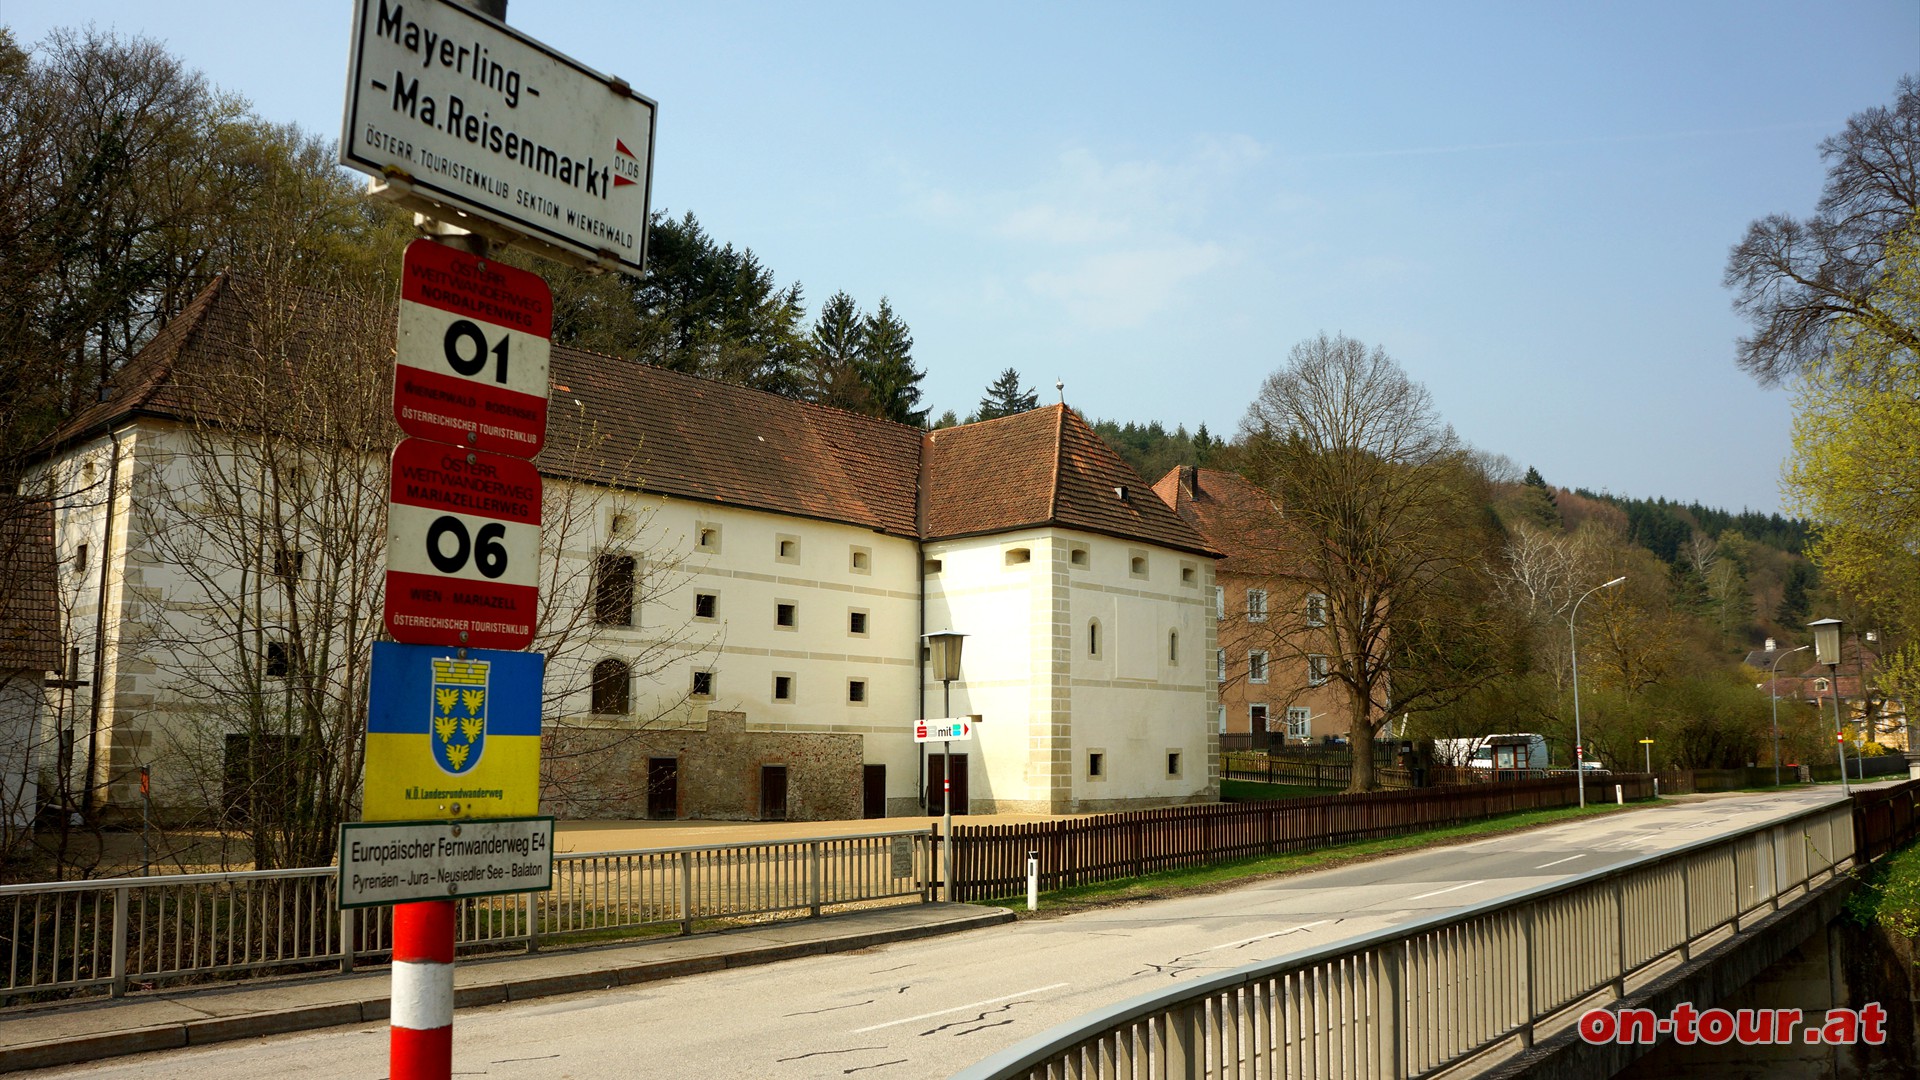 Im Anschluss wieder zurück zum Kloster, durch die Anlage bis zur Straße und, außerhalb der Stiftsmauern, dem rot markierten Weg nach Mayerling folgen.